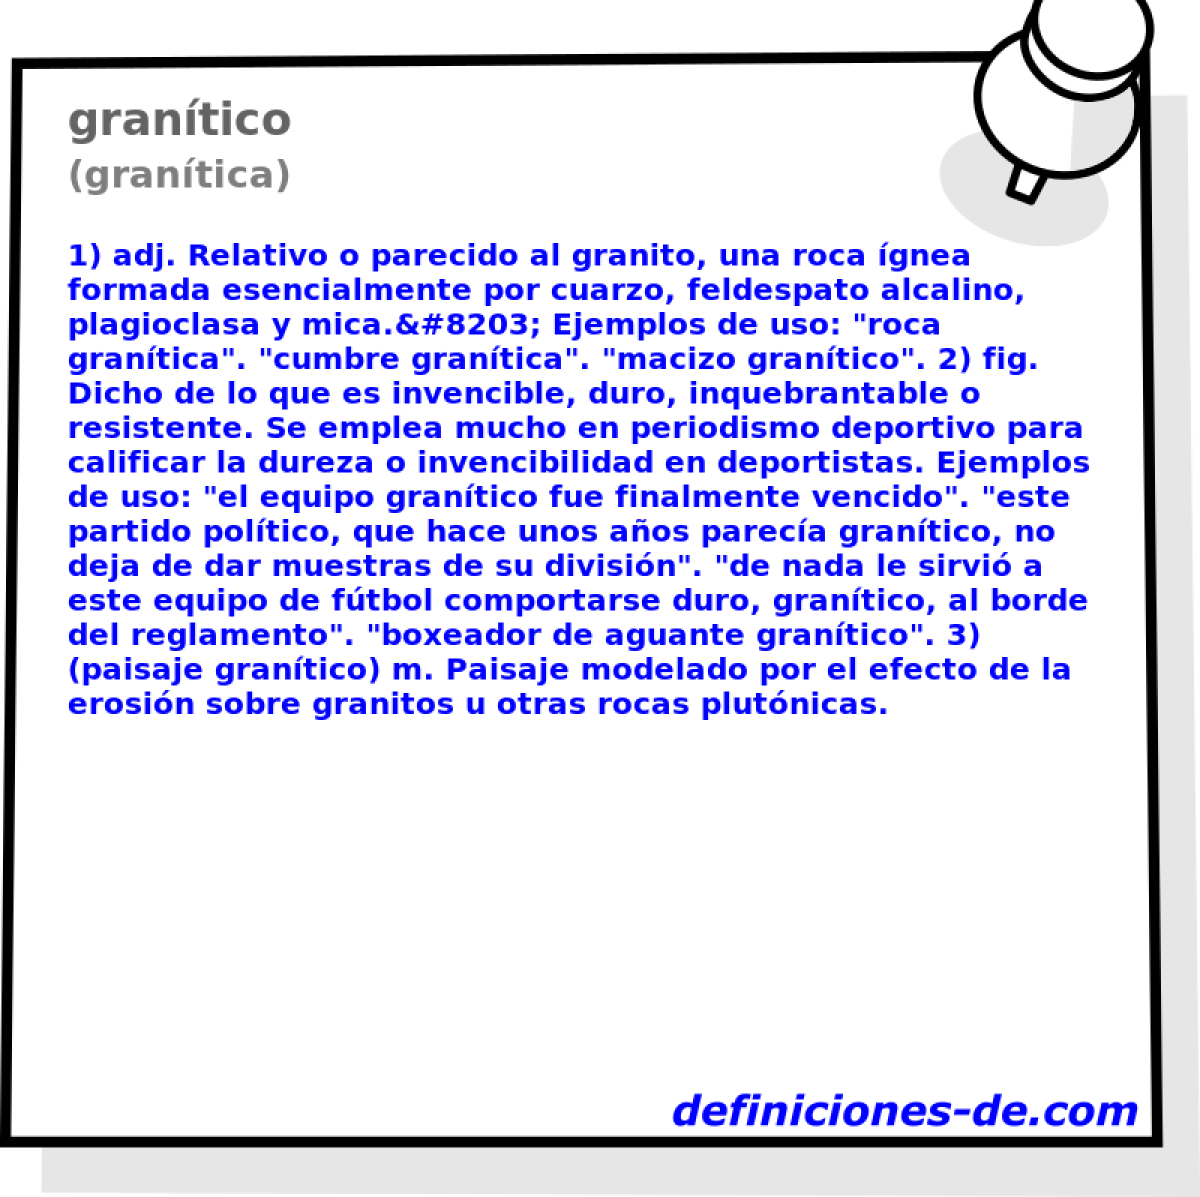 grantico (grantica)